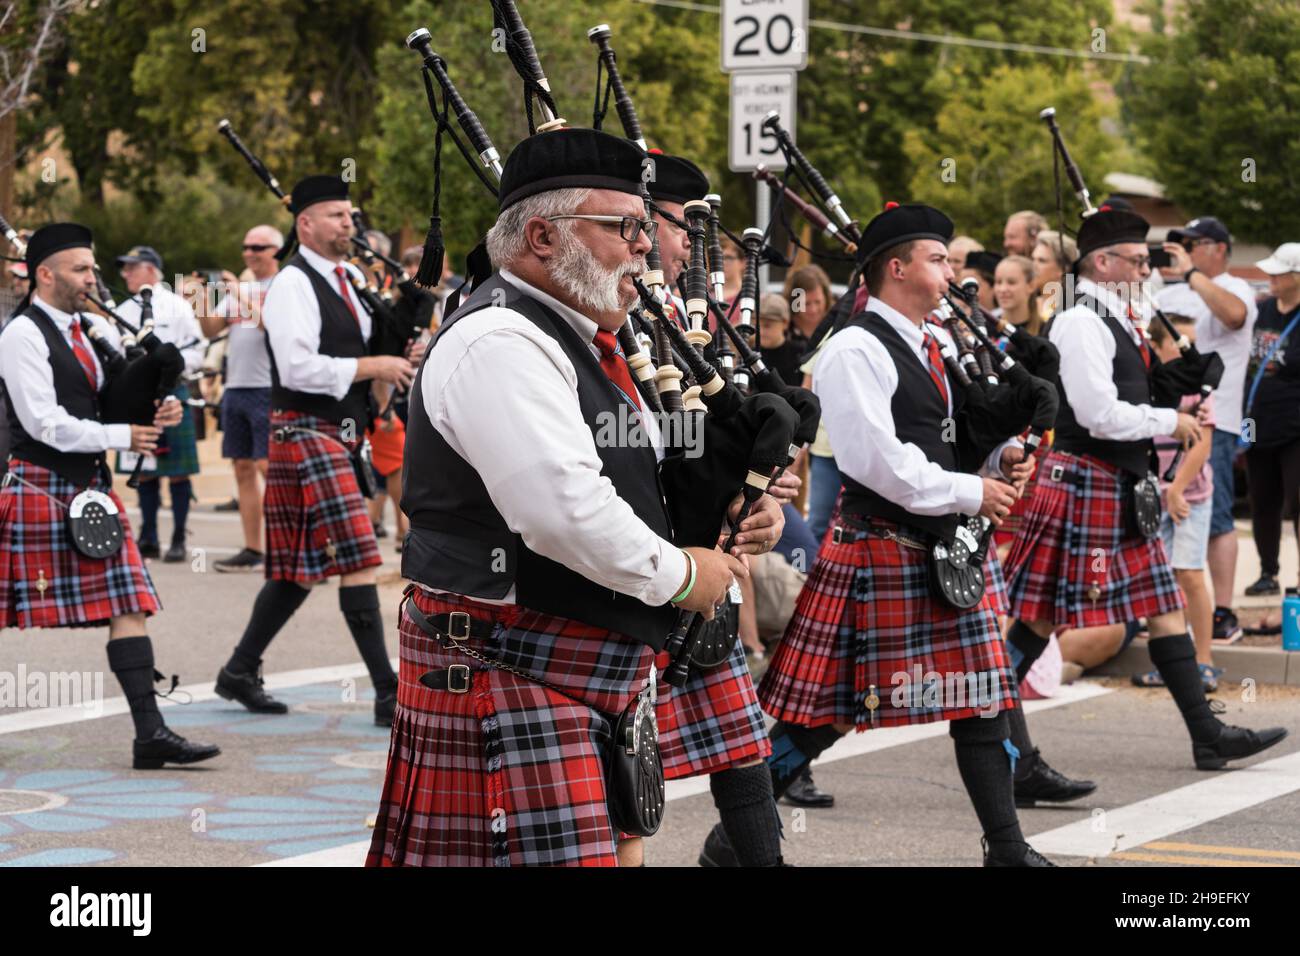 Un groupe de pianos écossais marche dans un défilé lors d'un festival écossais à Moab, Utah. Banque D'Images